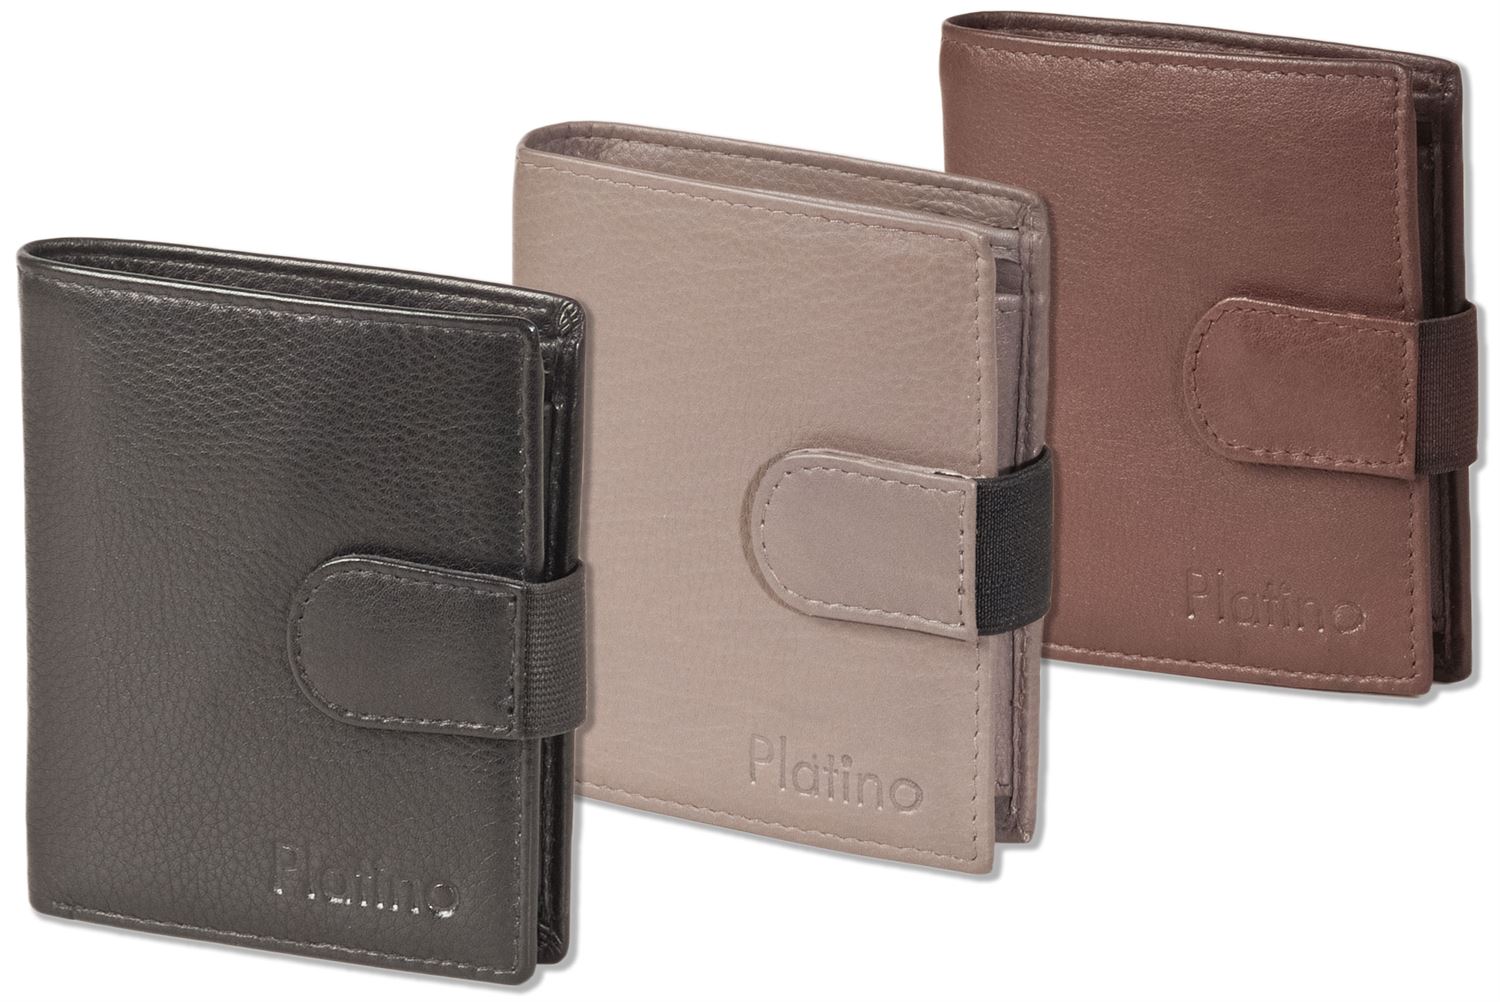 Platino - Kompakte, kleine Geldbörse mit Platz für 19 Kreditkarten aus weichem Rind-Nappaleder in Schwarz